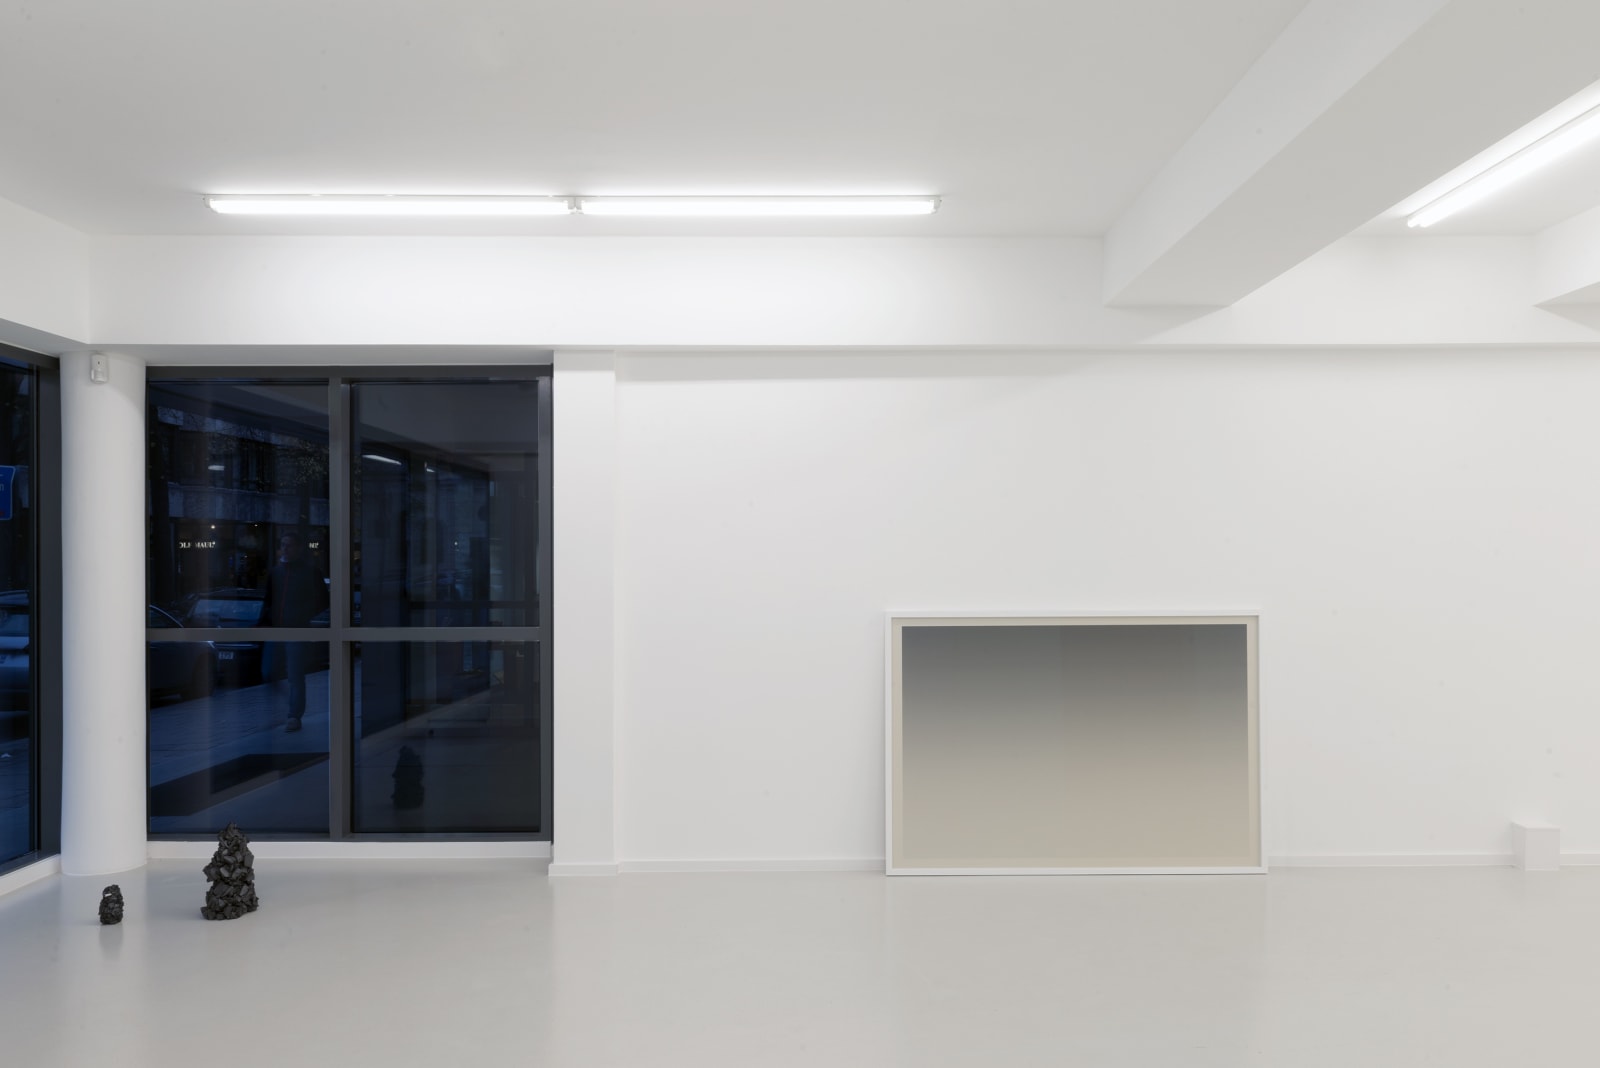 Installation view studio visit for Kunstverein München 2020